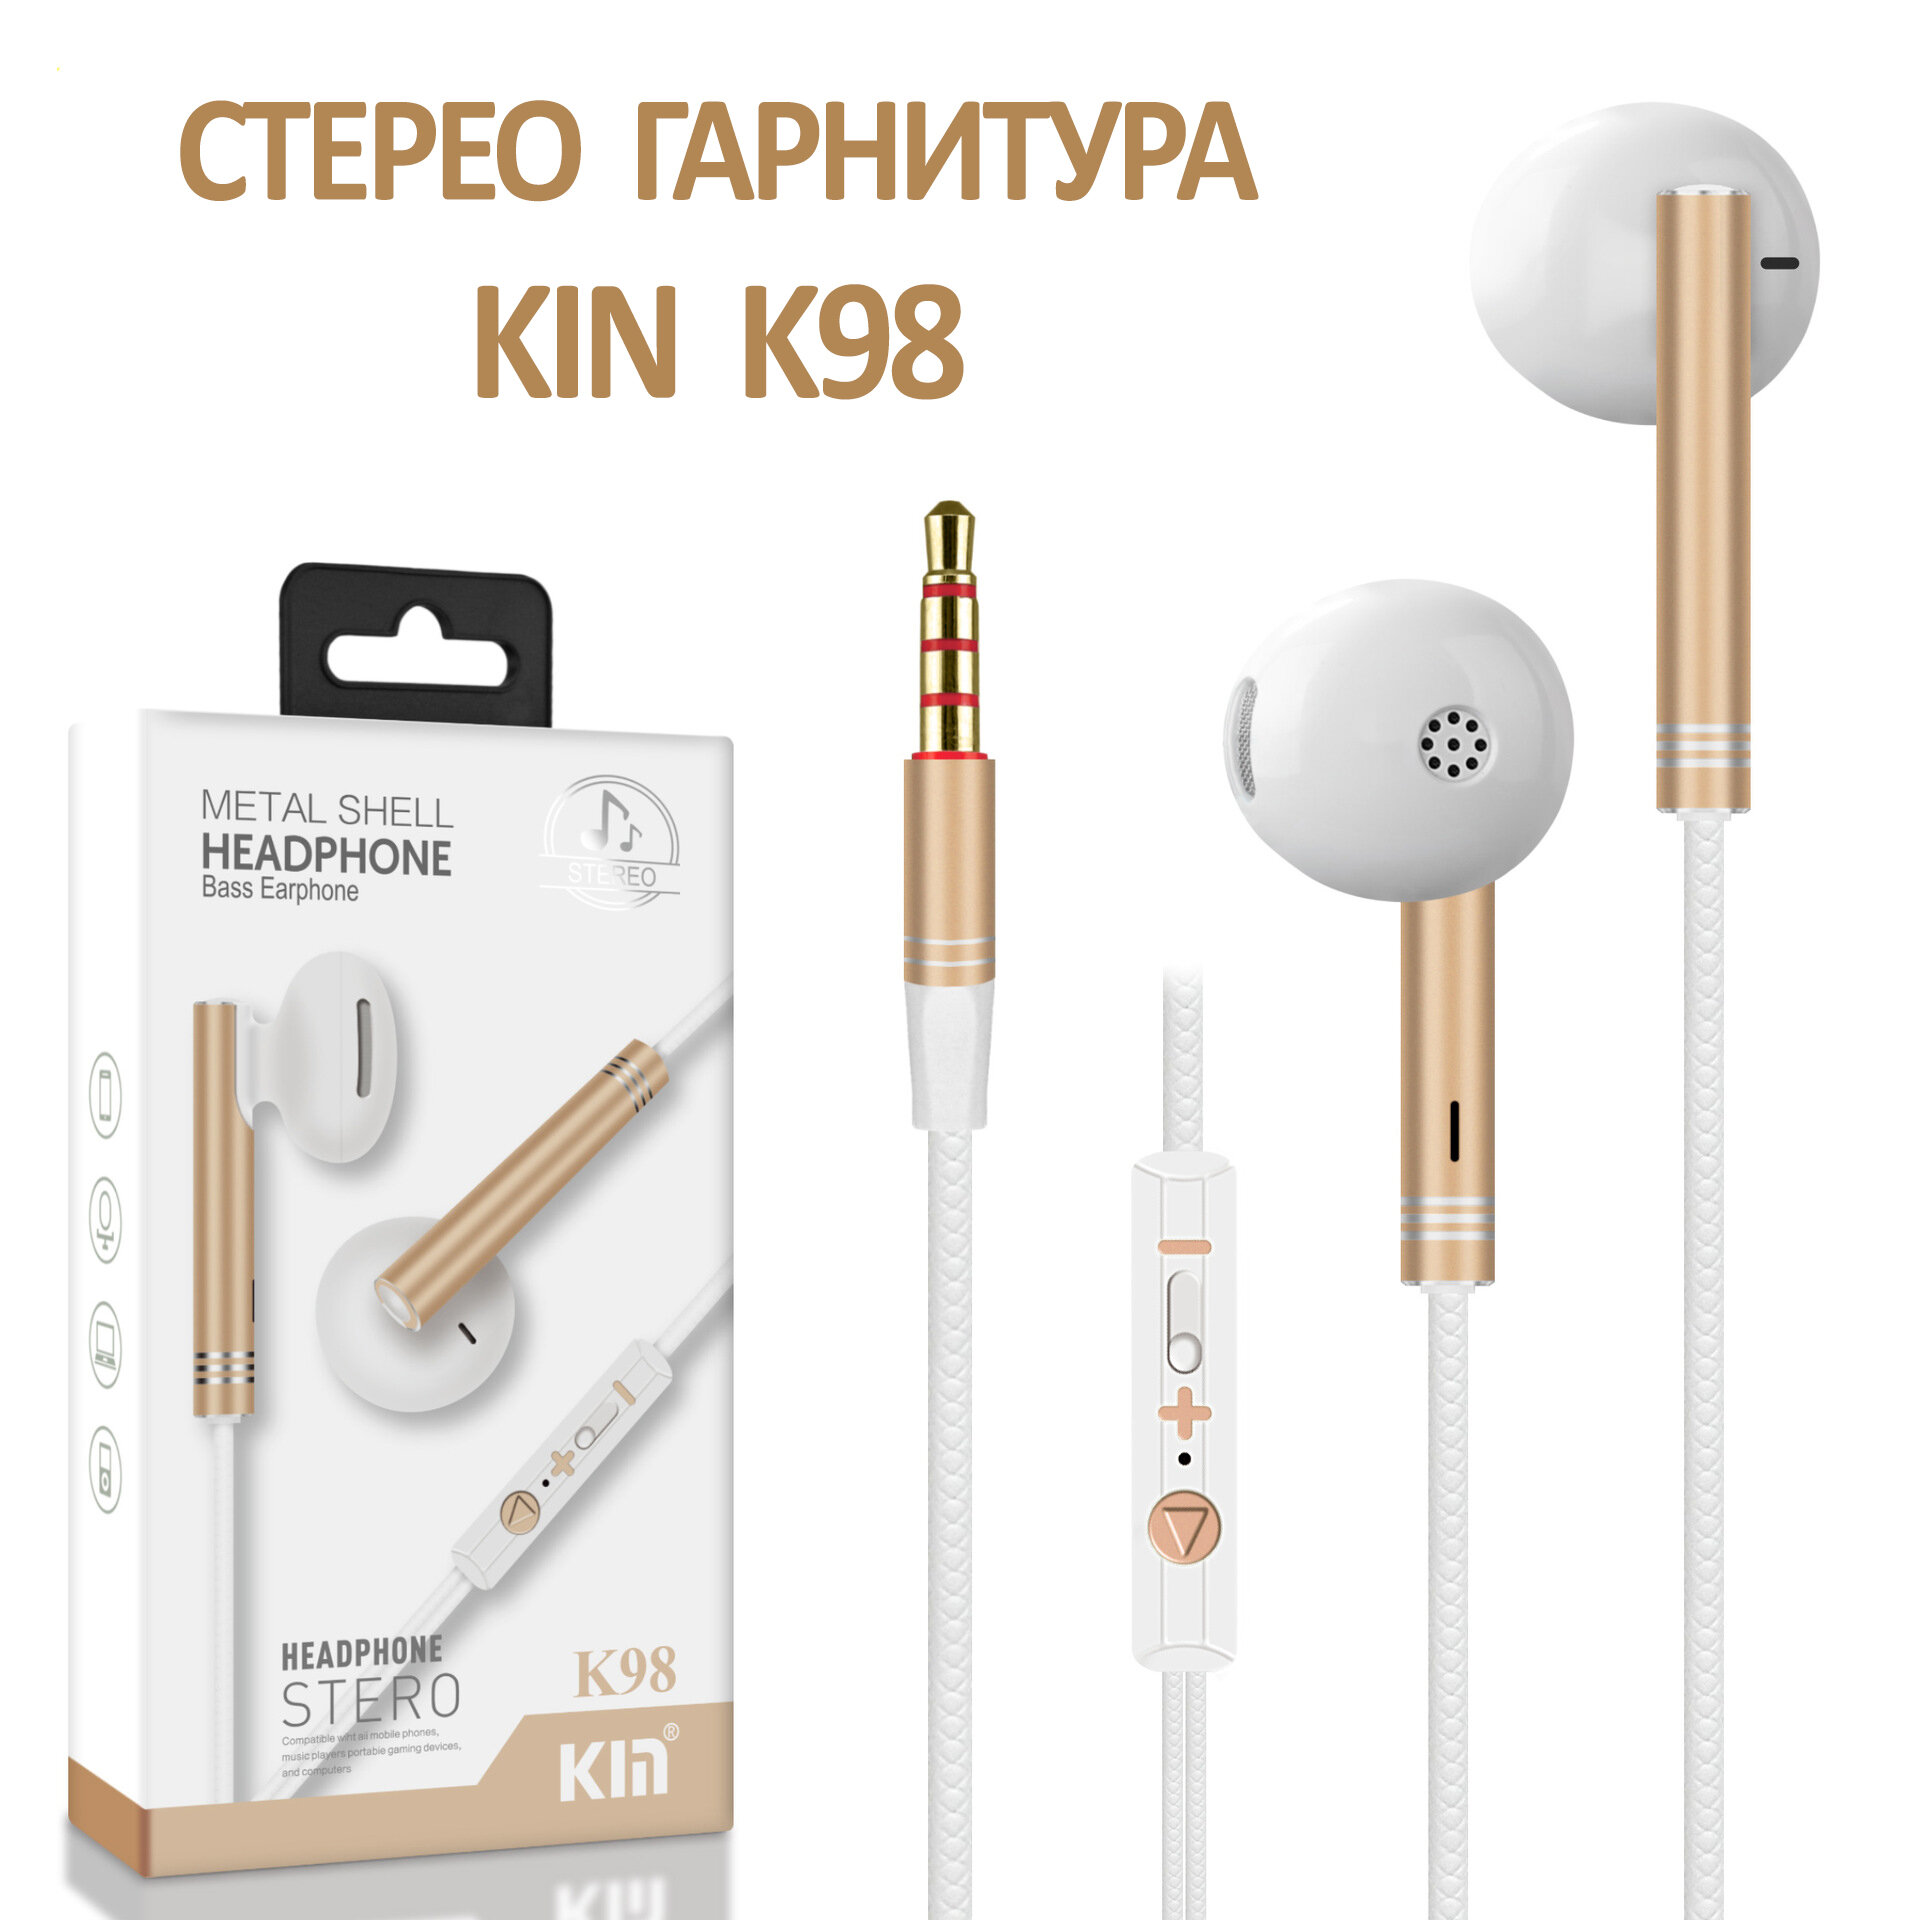 Гарнитура (наушники с микрофоном) проводная KIN K-98, цвет золотистый - бежевый